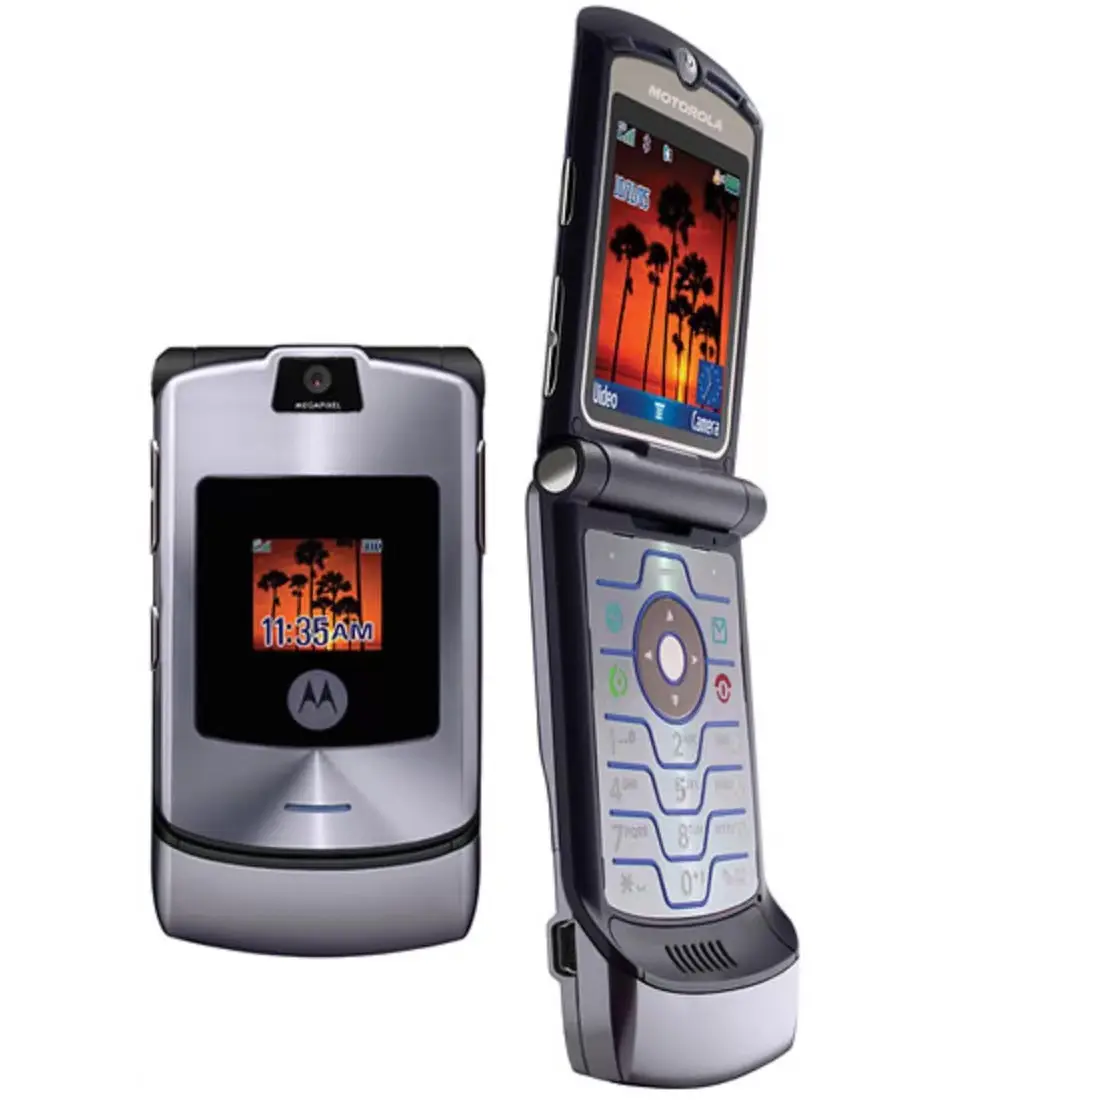 Best Selling Unlocked 2G GSM 2.2inch Flip Mobile Cell Phone Cheap Phone For Motorola V3i